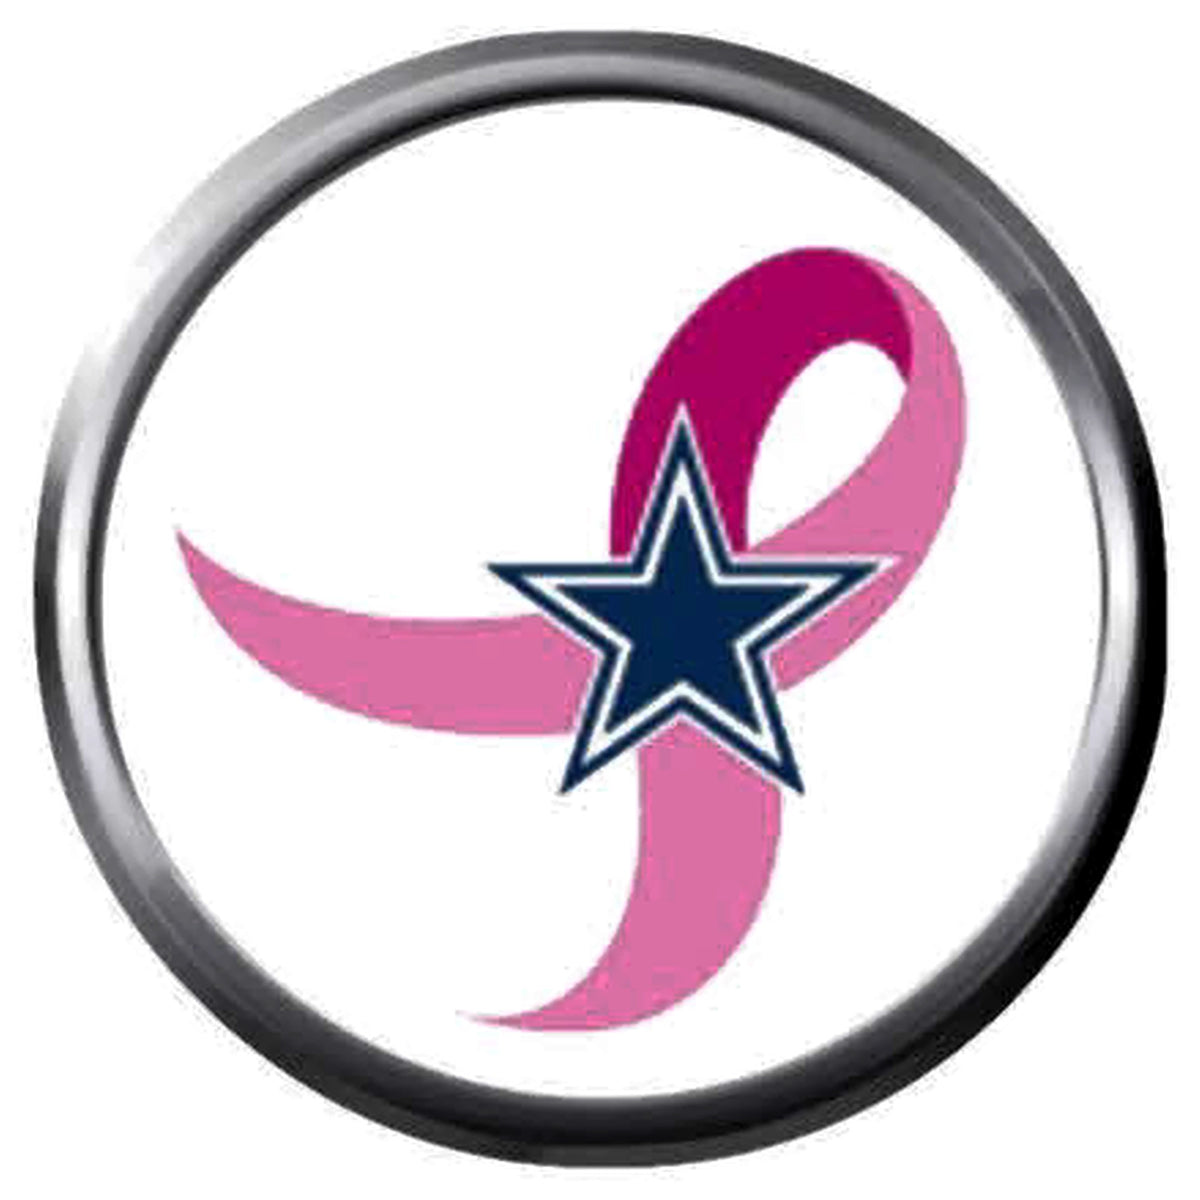 dallas cowboys breast cancer apparel